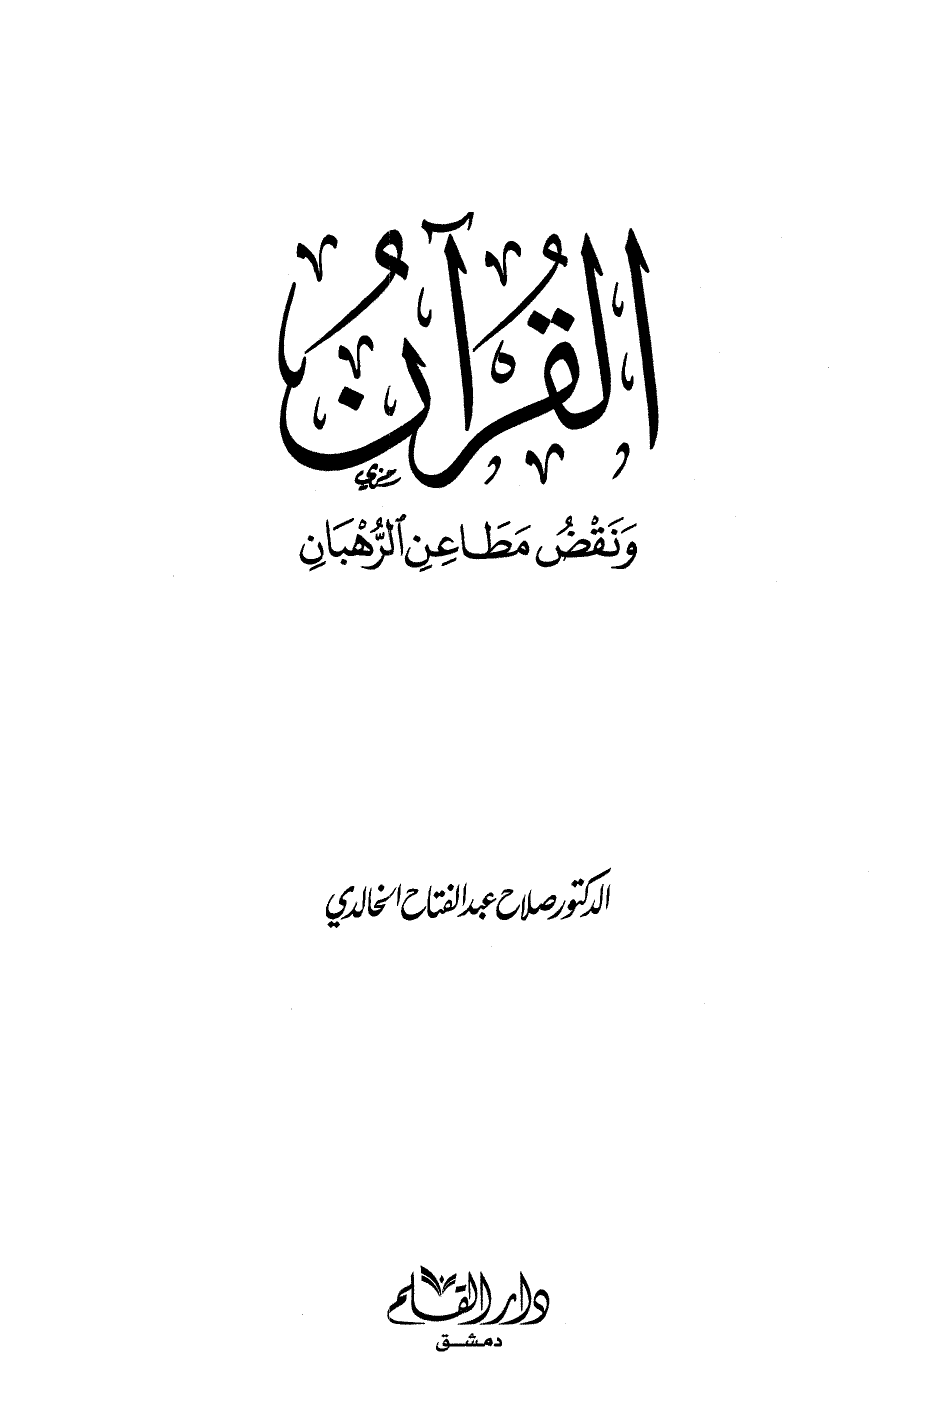 القرآن ونقض مطاعن الرهبان